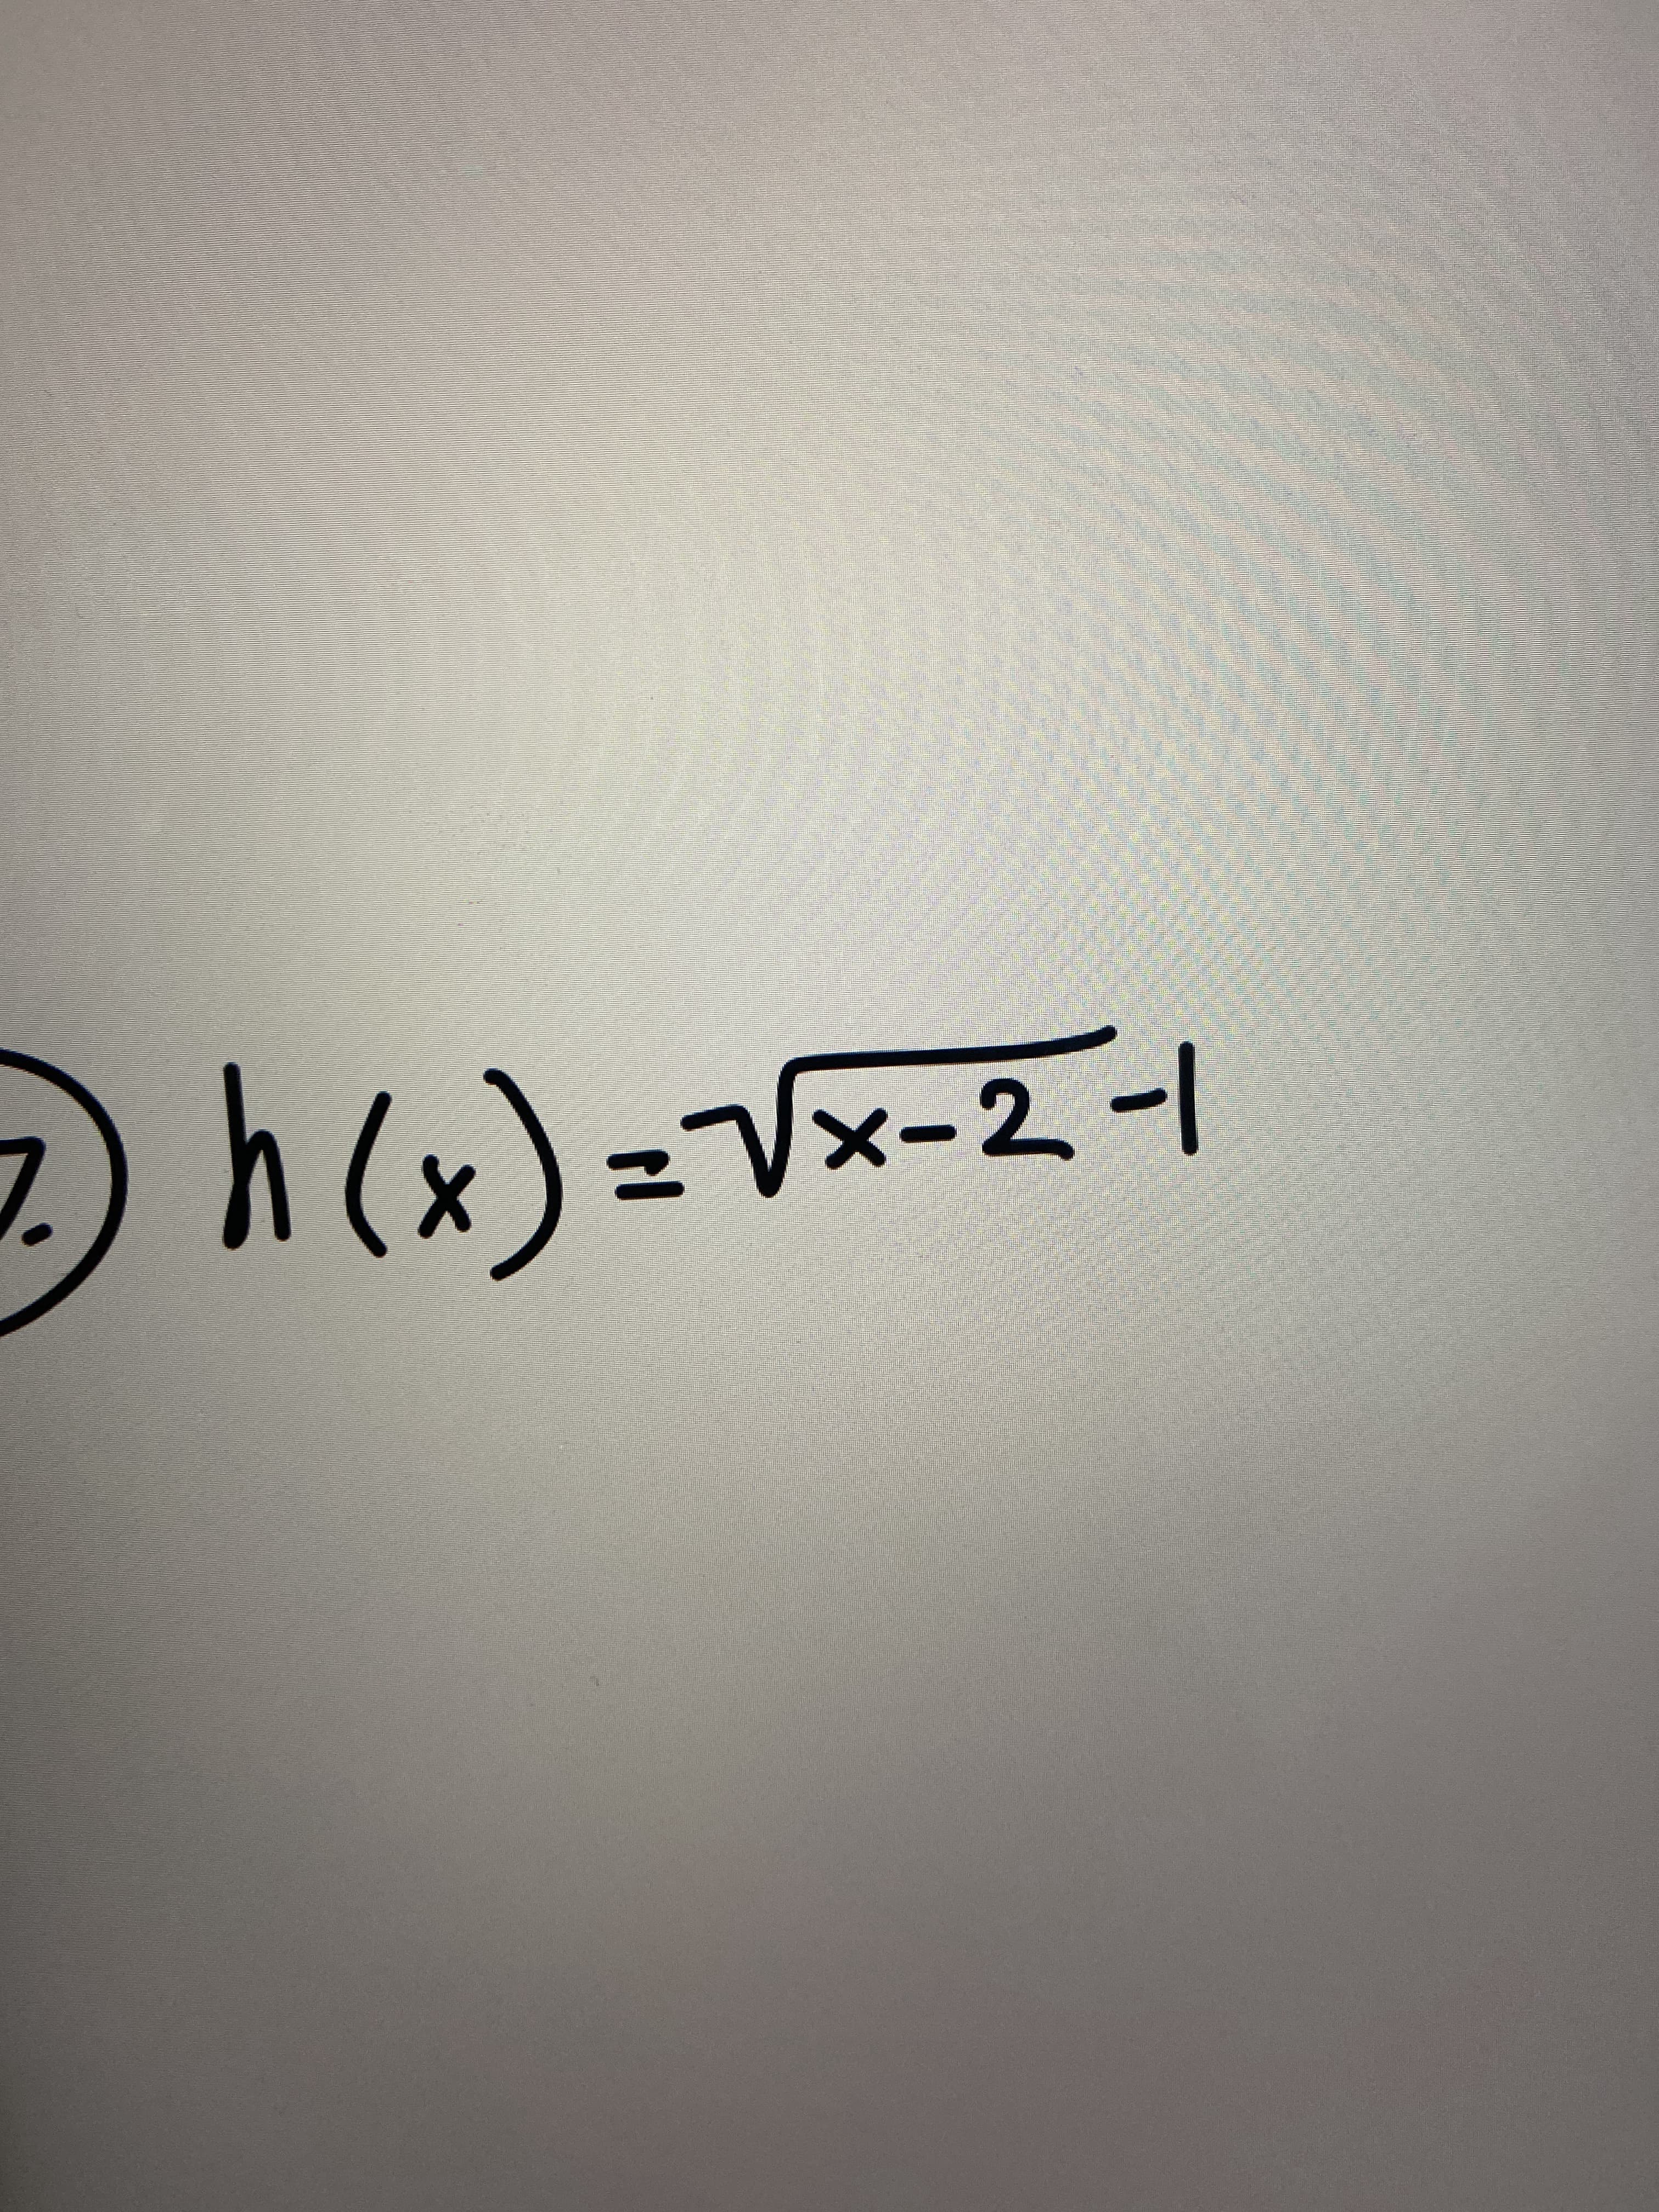 h(x)=Vx-2-1
%3D
